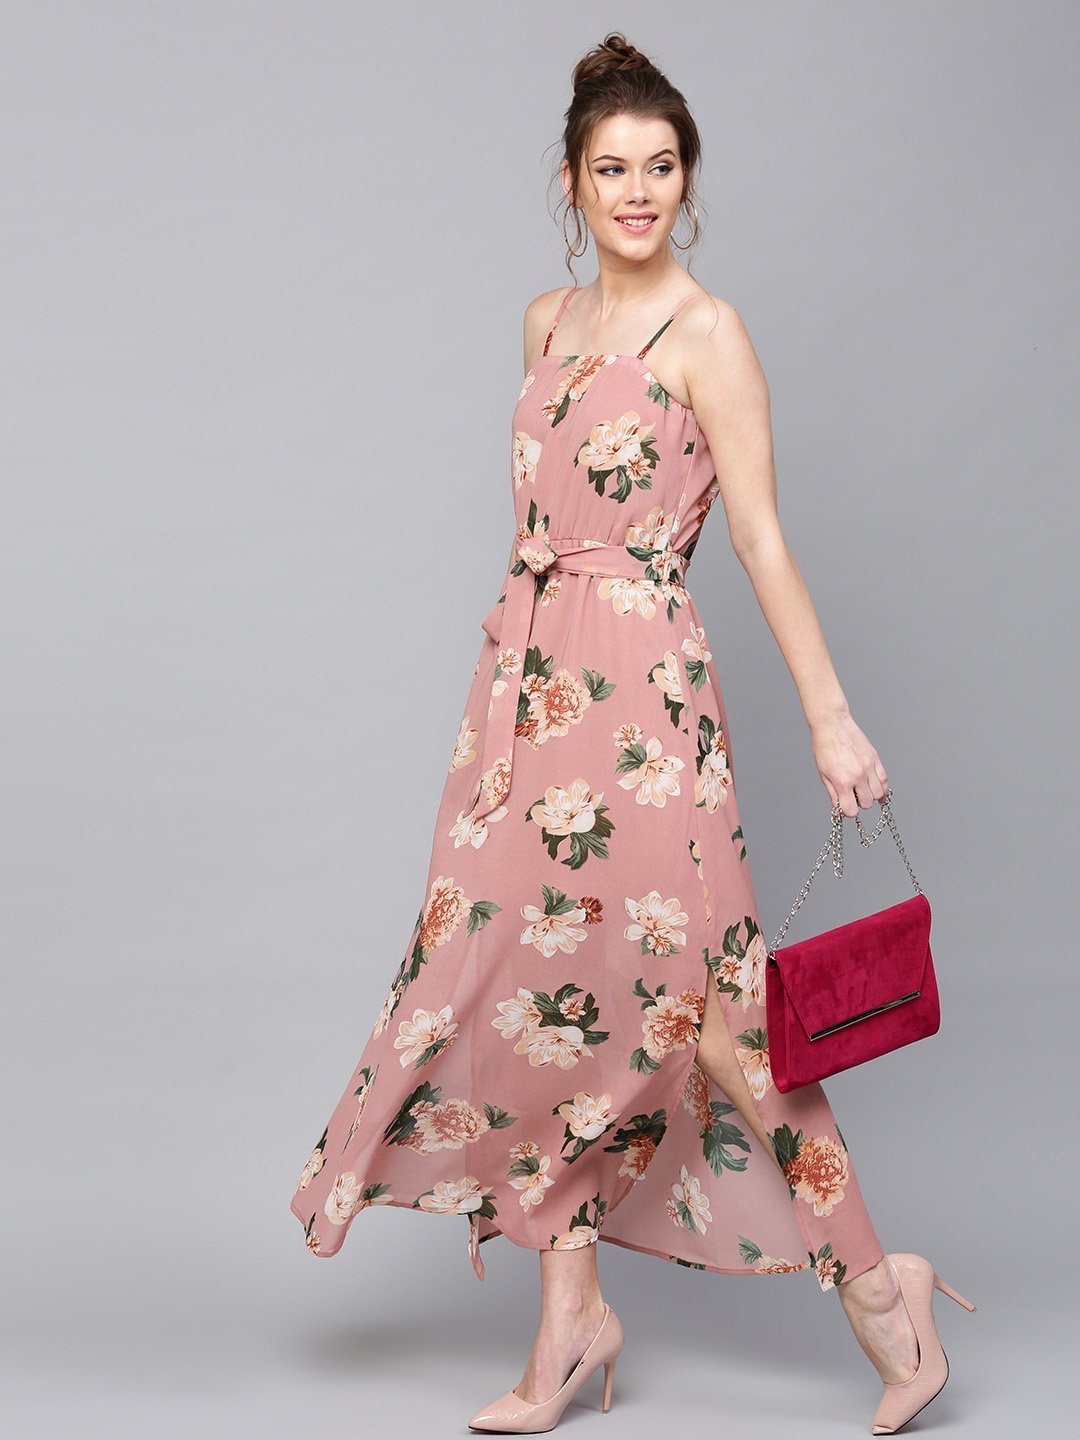 Dress Star - Dress - Floral Printed Maxi Dress - Dusty Pink And Green - 11518762643548-SASSAFRAS-Women-Pink-Printed-Maxi-Dress-8201518762643321-1_e91114e0-61ca-457a-9234-bd4de62f0a07